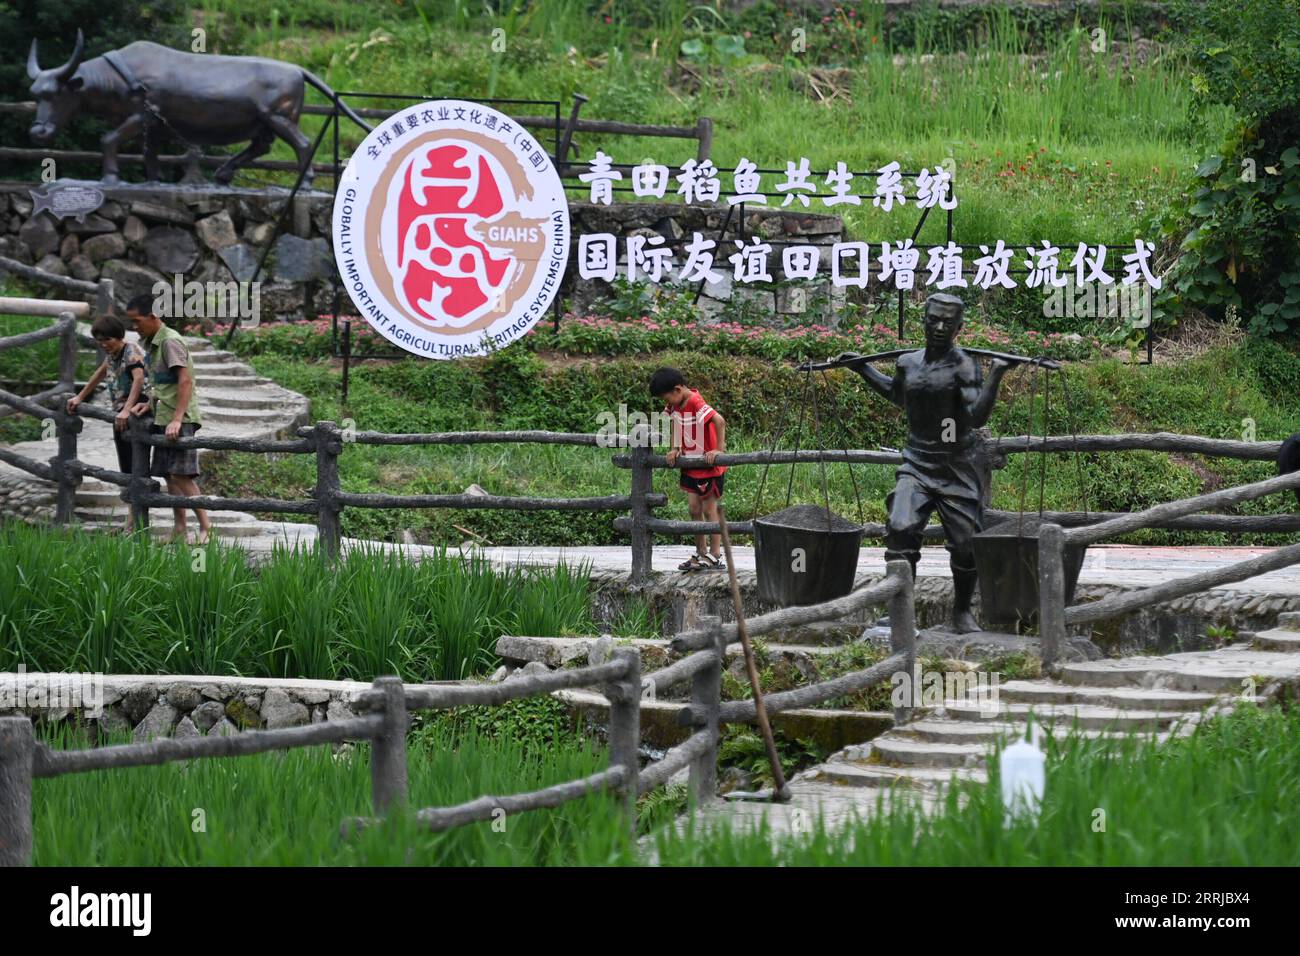 220719 -- QINGTIAN, 19. Juli 2022 -- Menschen besuchen ein Schutzgebiet des Reis-Fisch-Ko-Kultursystems im Qingtian County in der ostchinesischen Provinz Zhejiang, 18. Juli 2022. Das Reis-Fisch-Ko-Kultursystem in Qingtian hat eine Geschichte von mehr als 1.300 Jahren und wurde in der weltweit ersten Gruppe der weltweit bedeutenden GIAHS-Systeme für landwirtschaftliches Erbe aufgeführt, die 2005 von der Ernährungs- und Landwirtschaftsorganisation der Vereinten Nationen FAO benannt wurden. Qingtian im südwestlichen Teil von Zhejiang verfügt über ausreichende Wasserressourcen und eine terrassenförmig angelegte Landschaft. Das Reis-Fisch-Kokultursystem kann schön sein Stockfoto